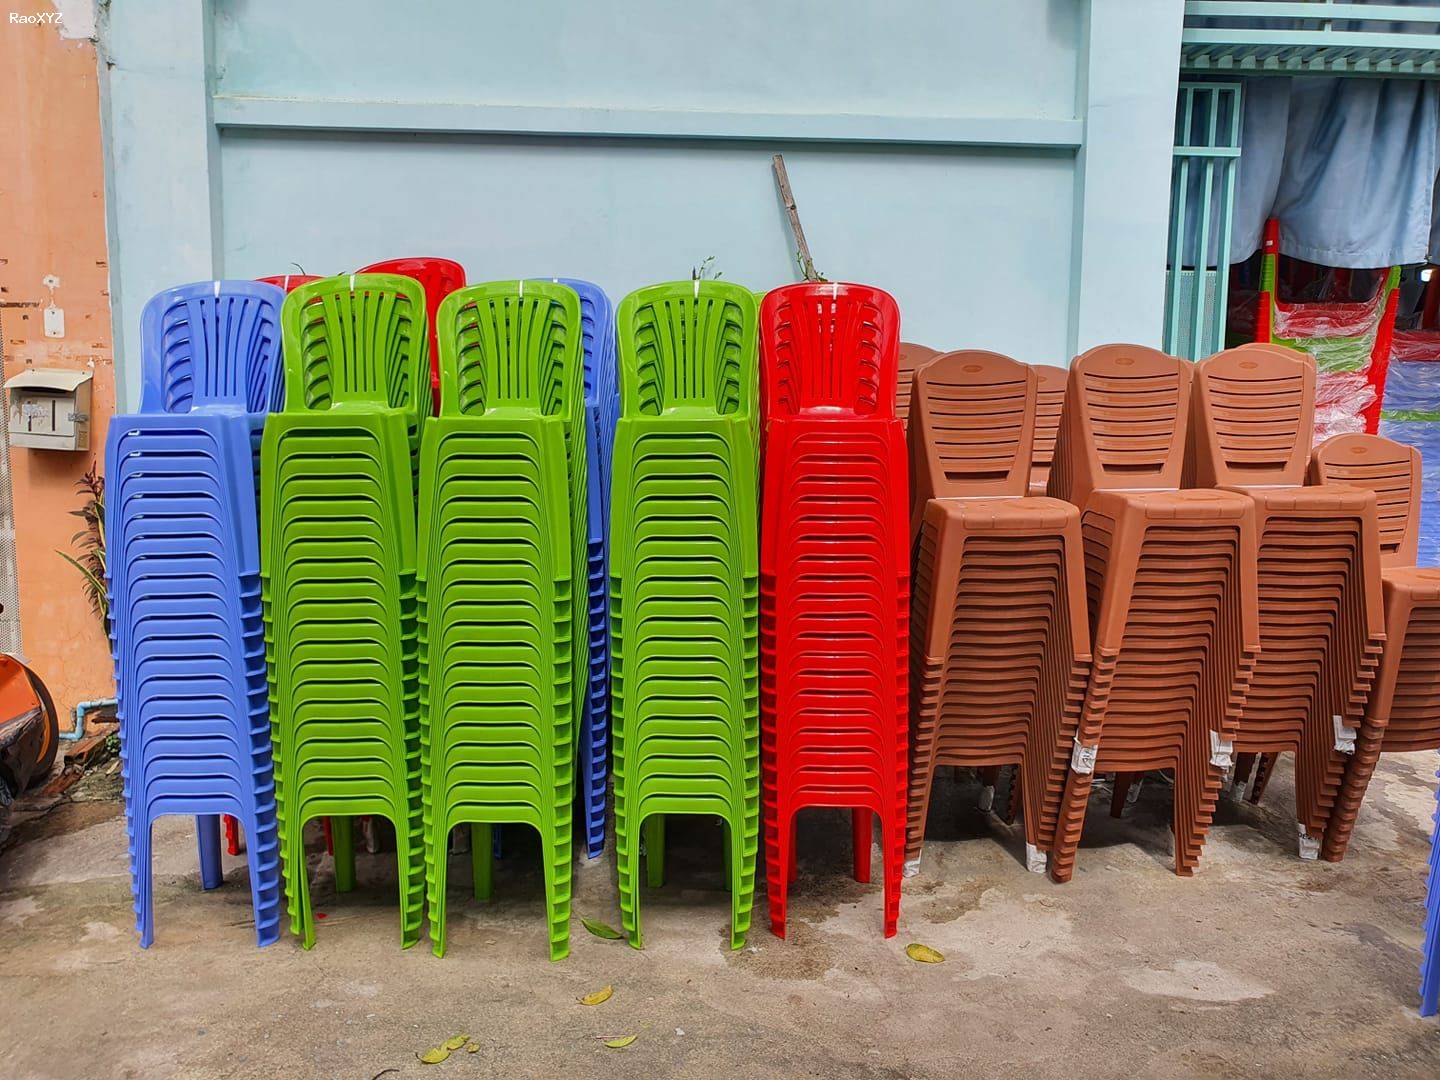 Phân phối sỉ lẻ bàn ghế quán ăn, ghế dựa cao nhựa Việt Thành tại TPHCM